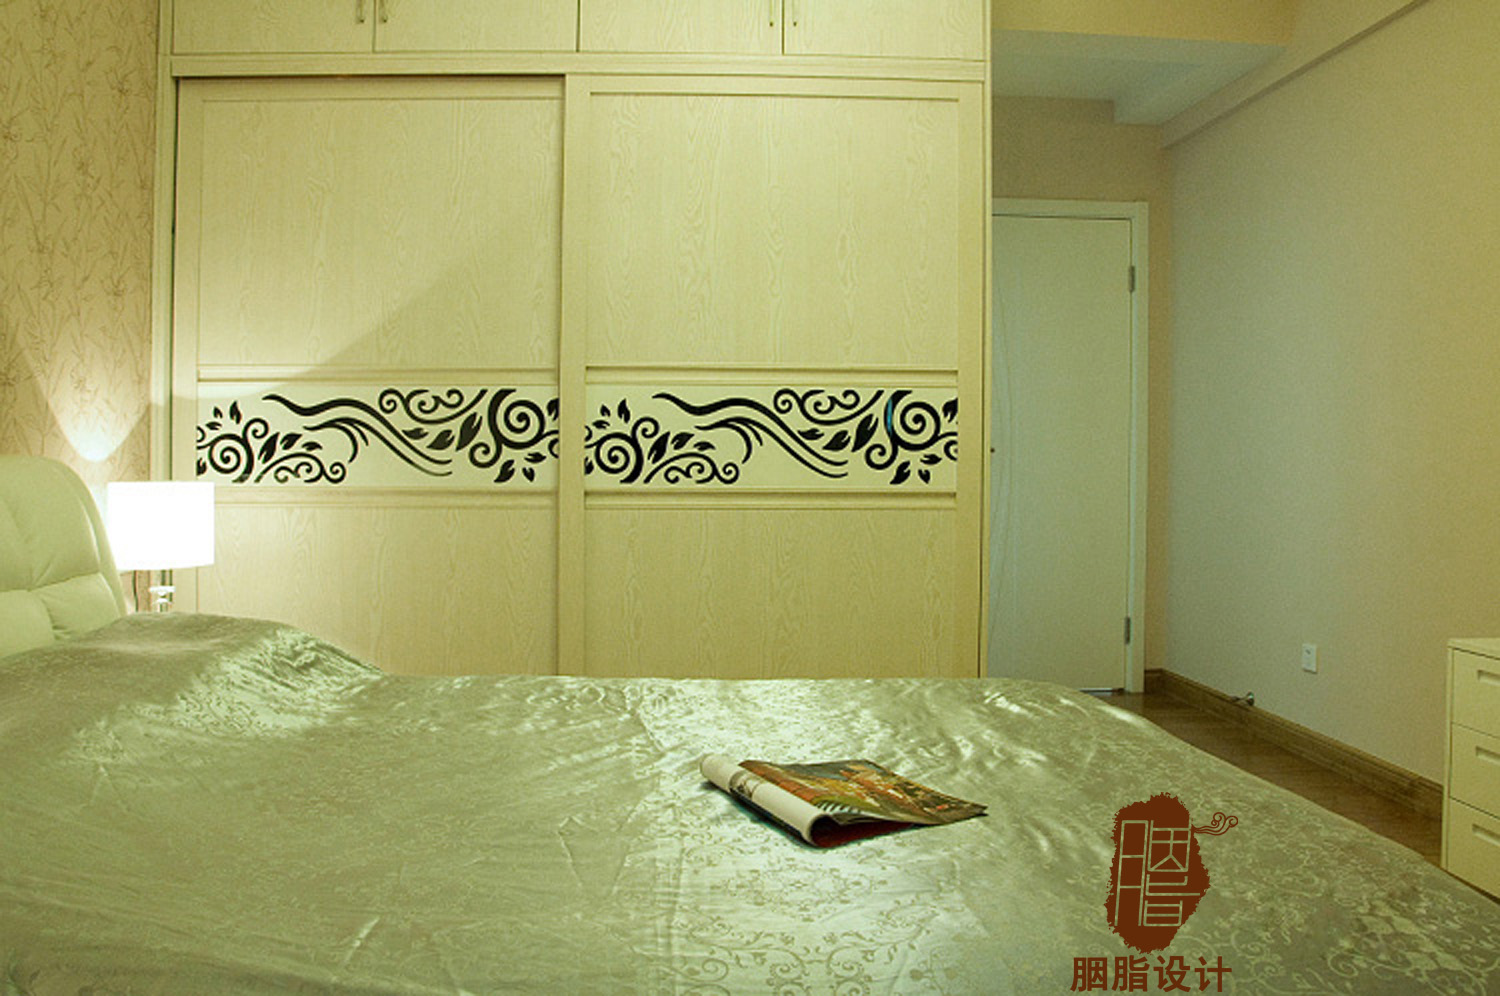 胭脂设计 简约 三居 白领 小资 独立书房 独立储物间 百搭白色 中性色 卧室图片来自设计师胭脂在琴之韵的分享